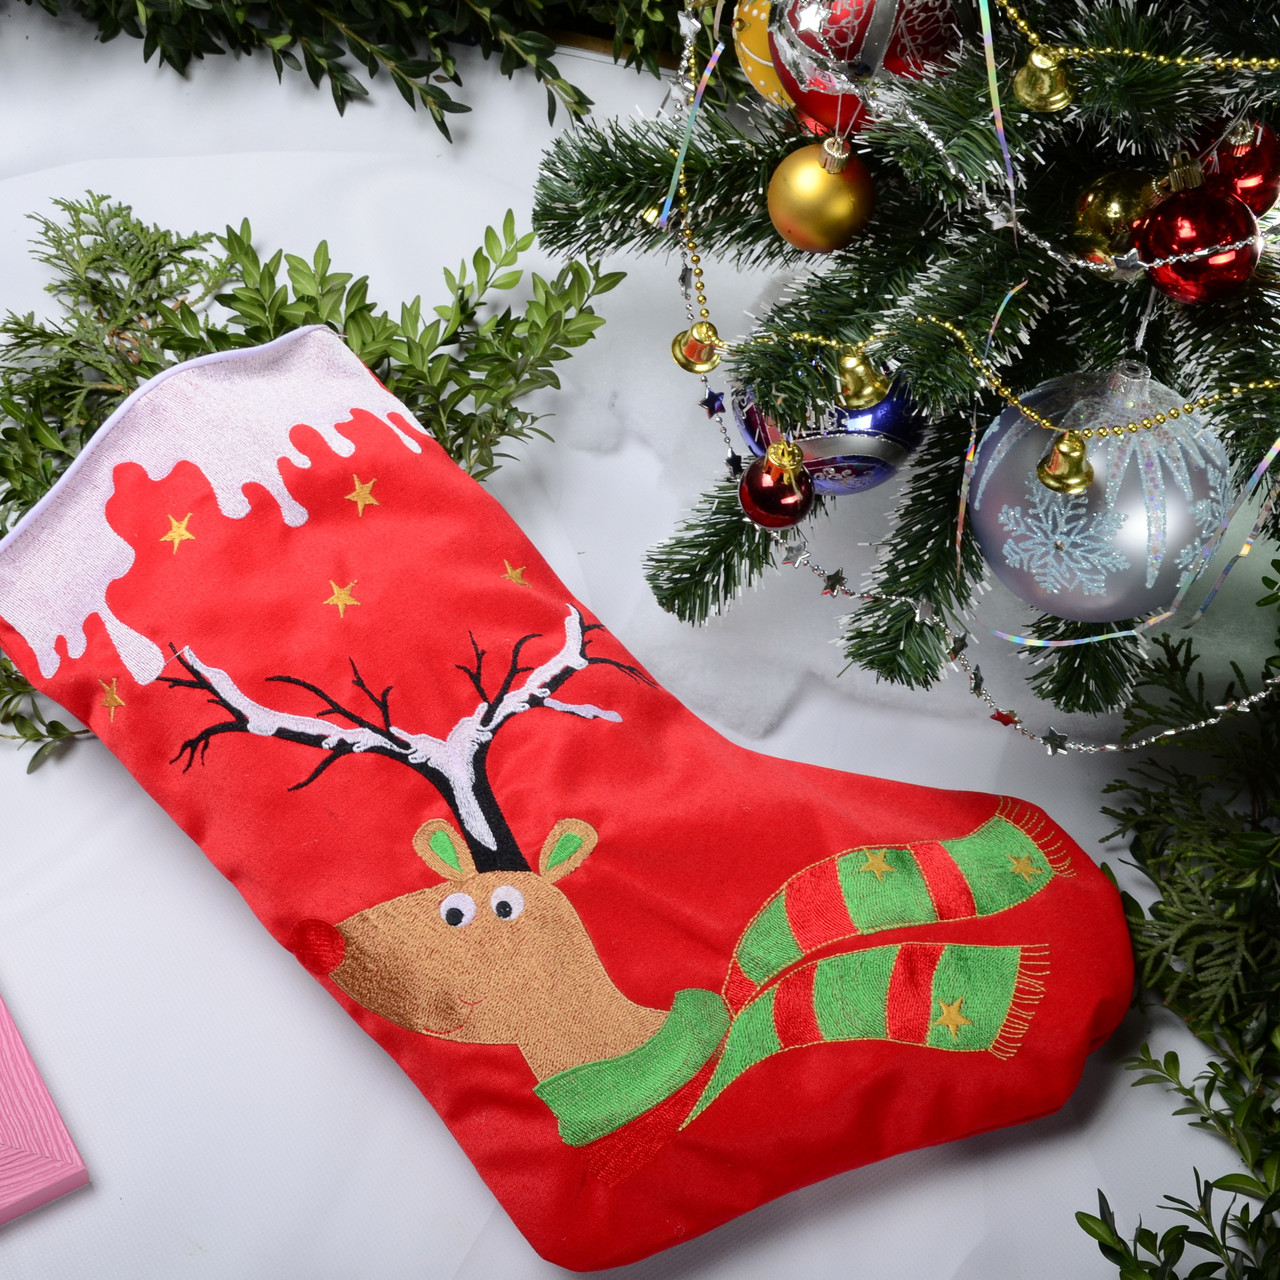 Новорічний подарунковий чобіт, Різдвяний носок, з вишивкою, червоного кольору, вишивка — олень у снігу.